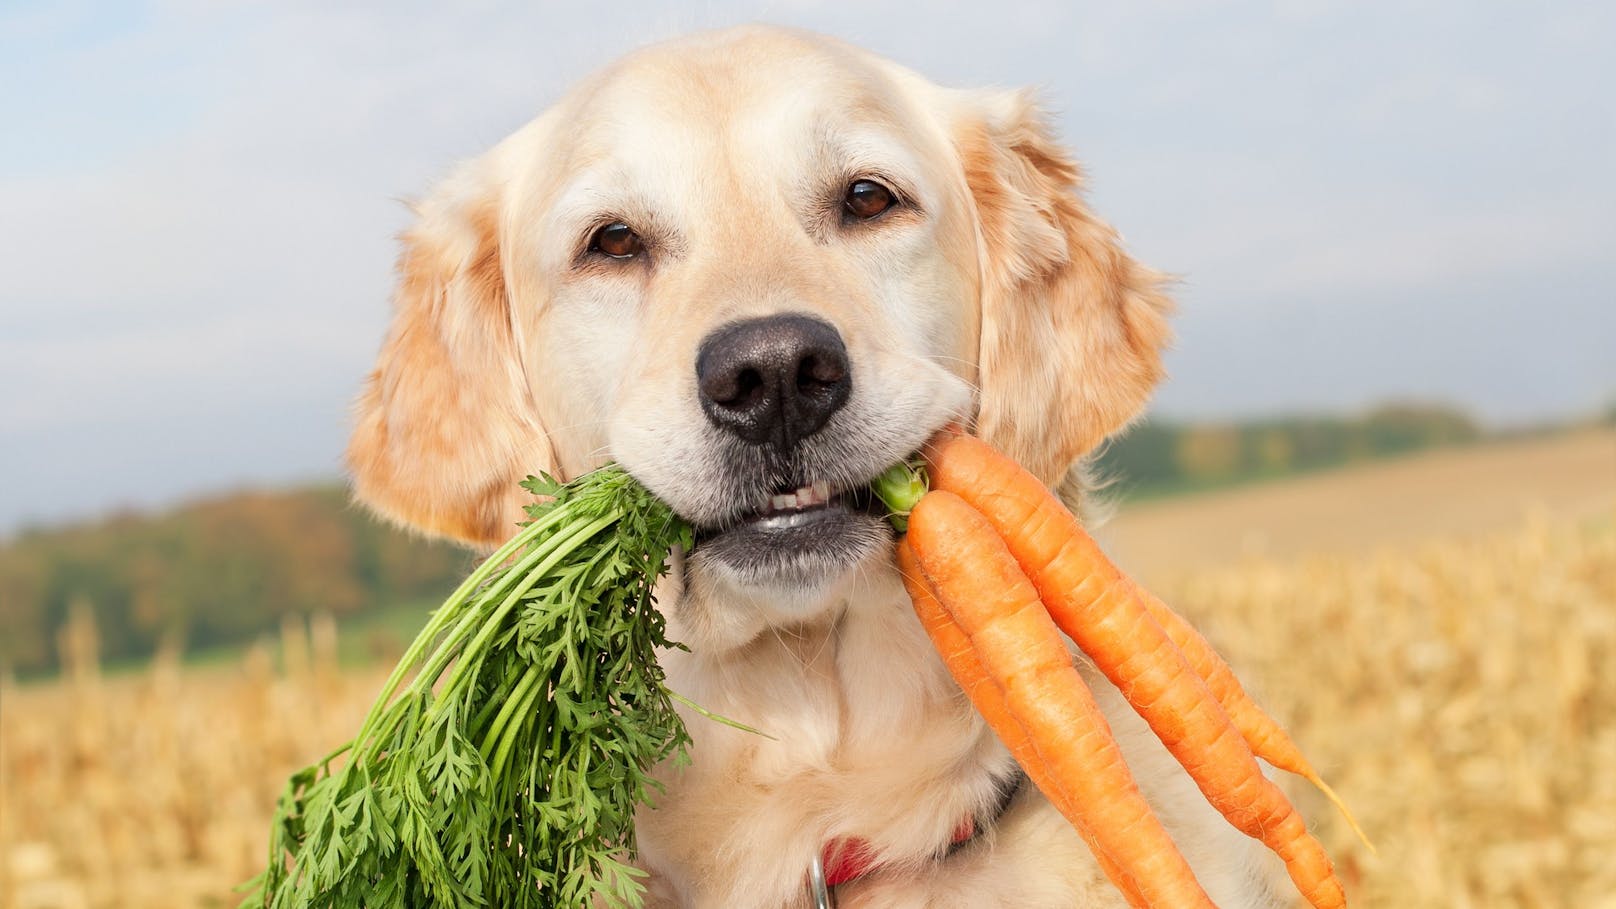 Immer mehr Hundehalter ernähren auch ihr Haustier vegan. Ist das wirklich gesünder? 